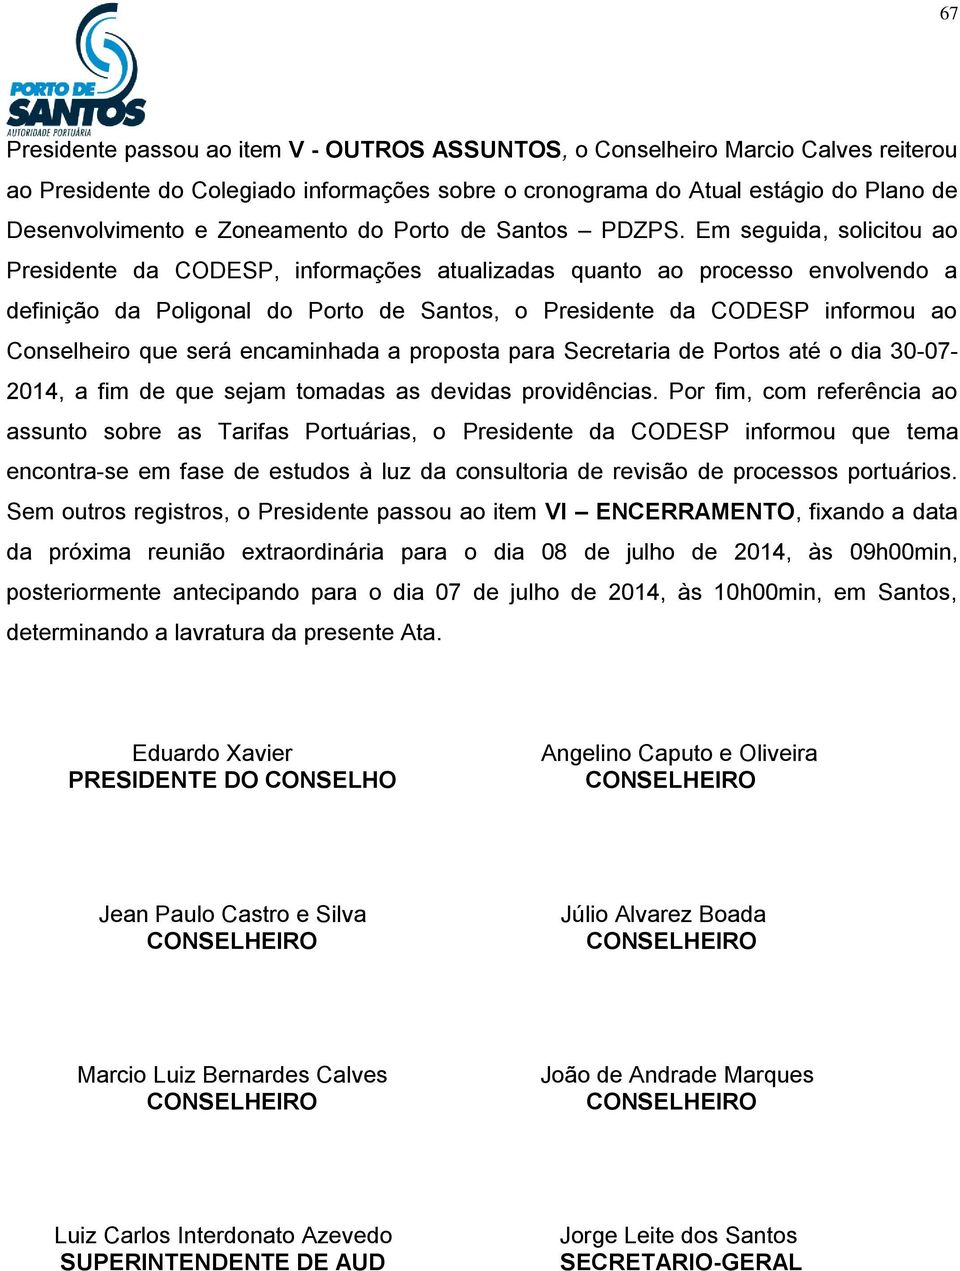 Em seguida, solicitou ao Presidente da CODESP, informações atualizadas quanto ao processo envolvendo a definição da Poligonal do Porto de Santos, o Presidente da CODESP informou ao Conselheiro que